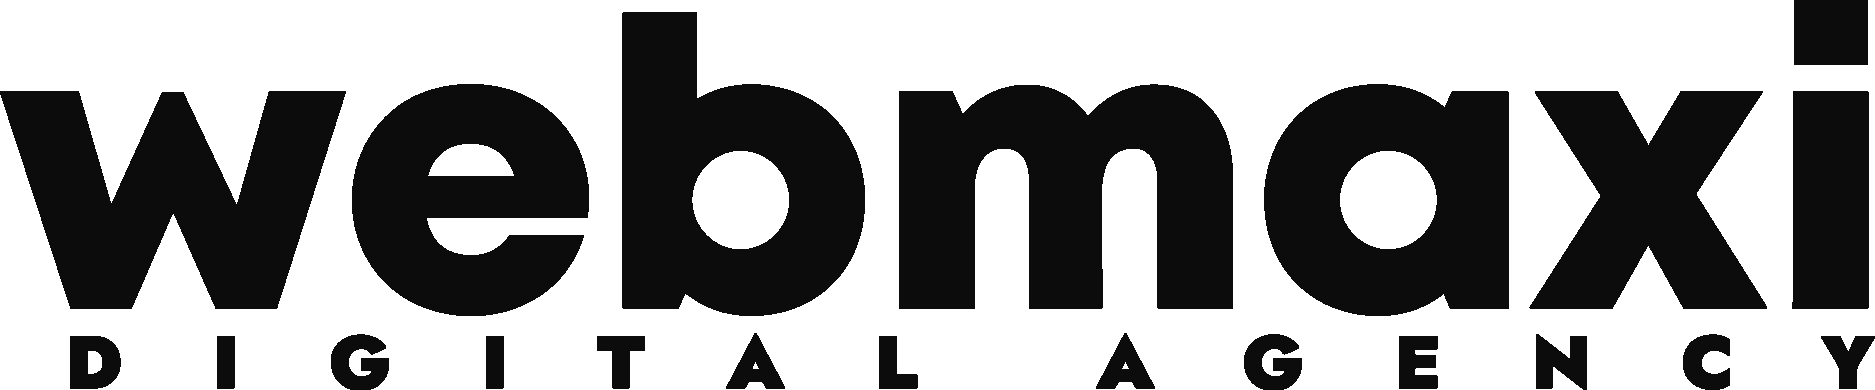 Webmaxi Digital Agency Wordmark Logo Vector